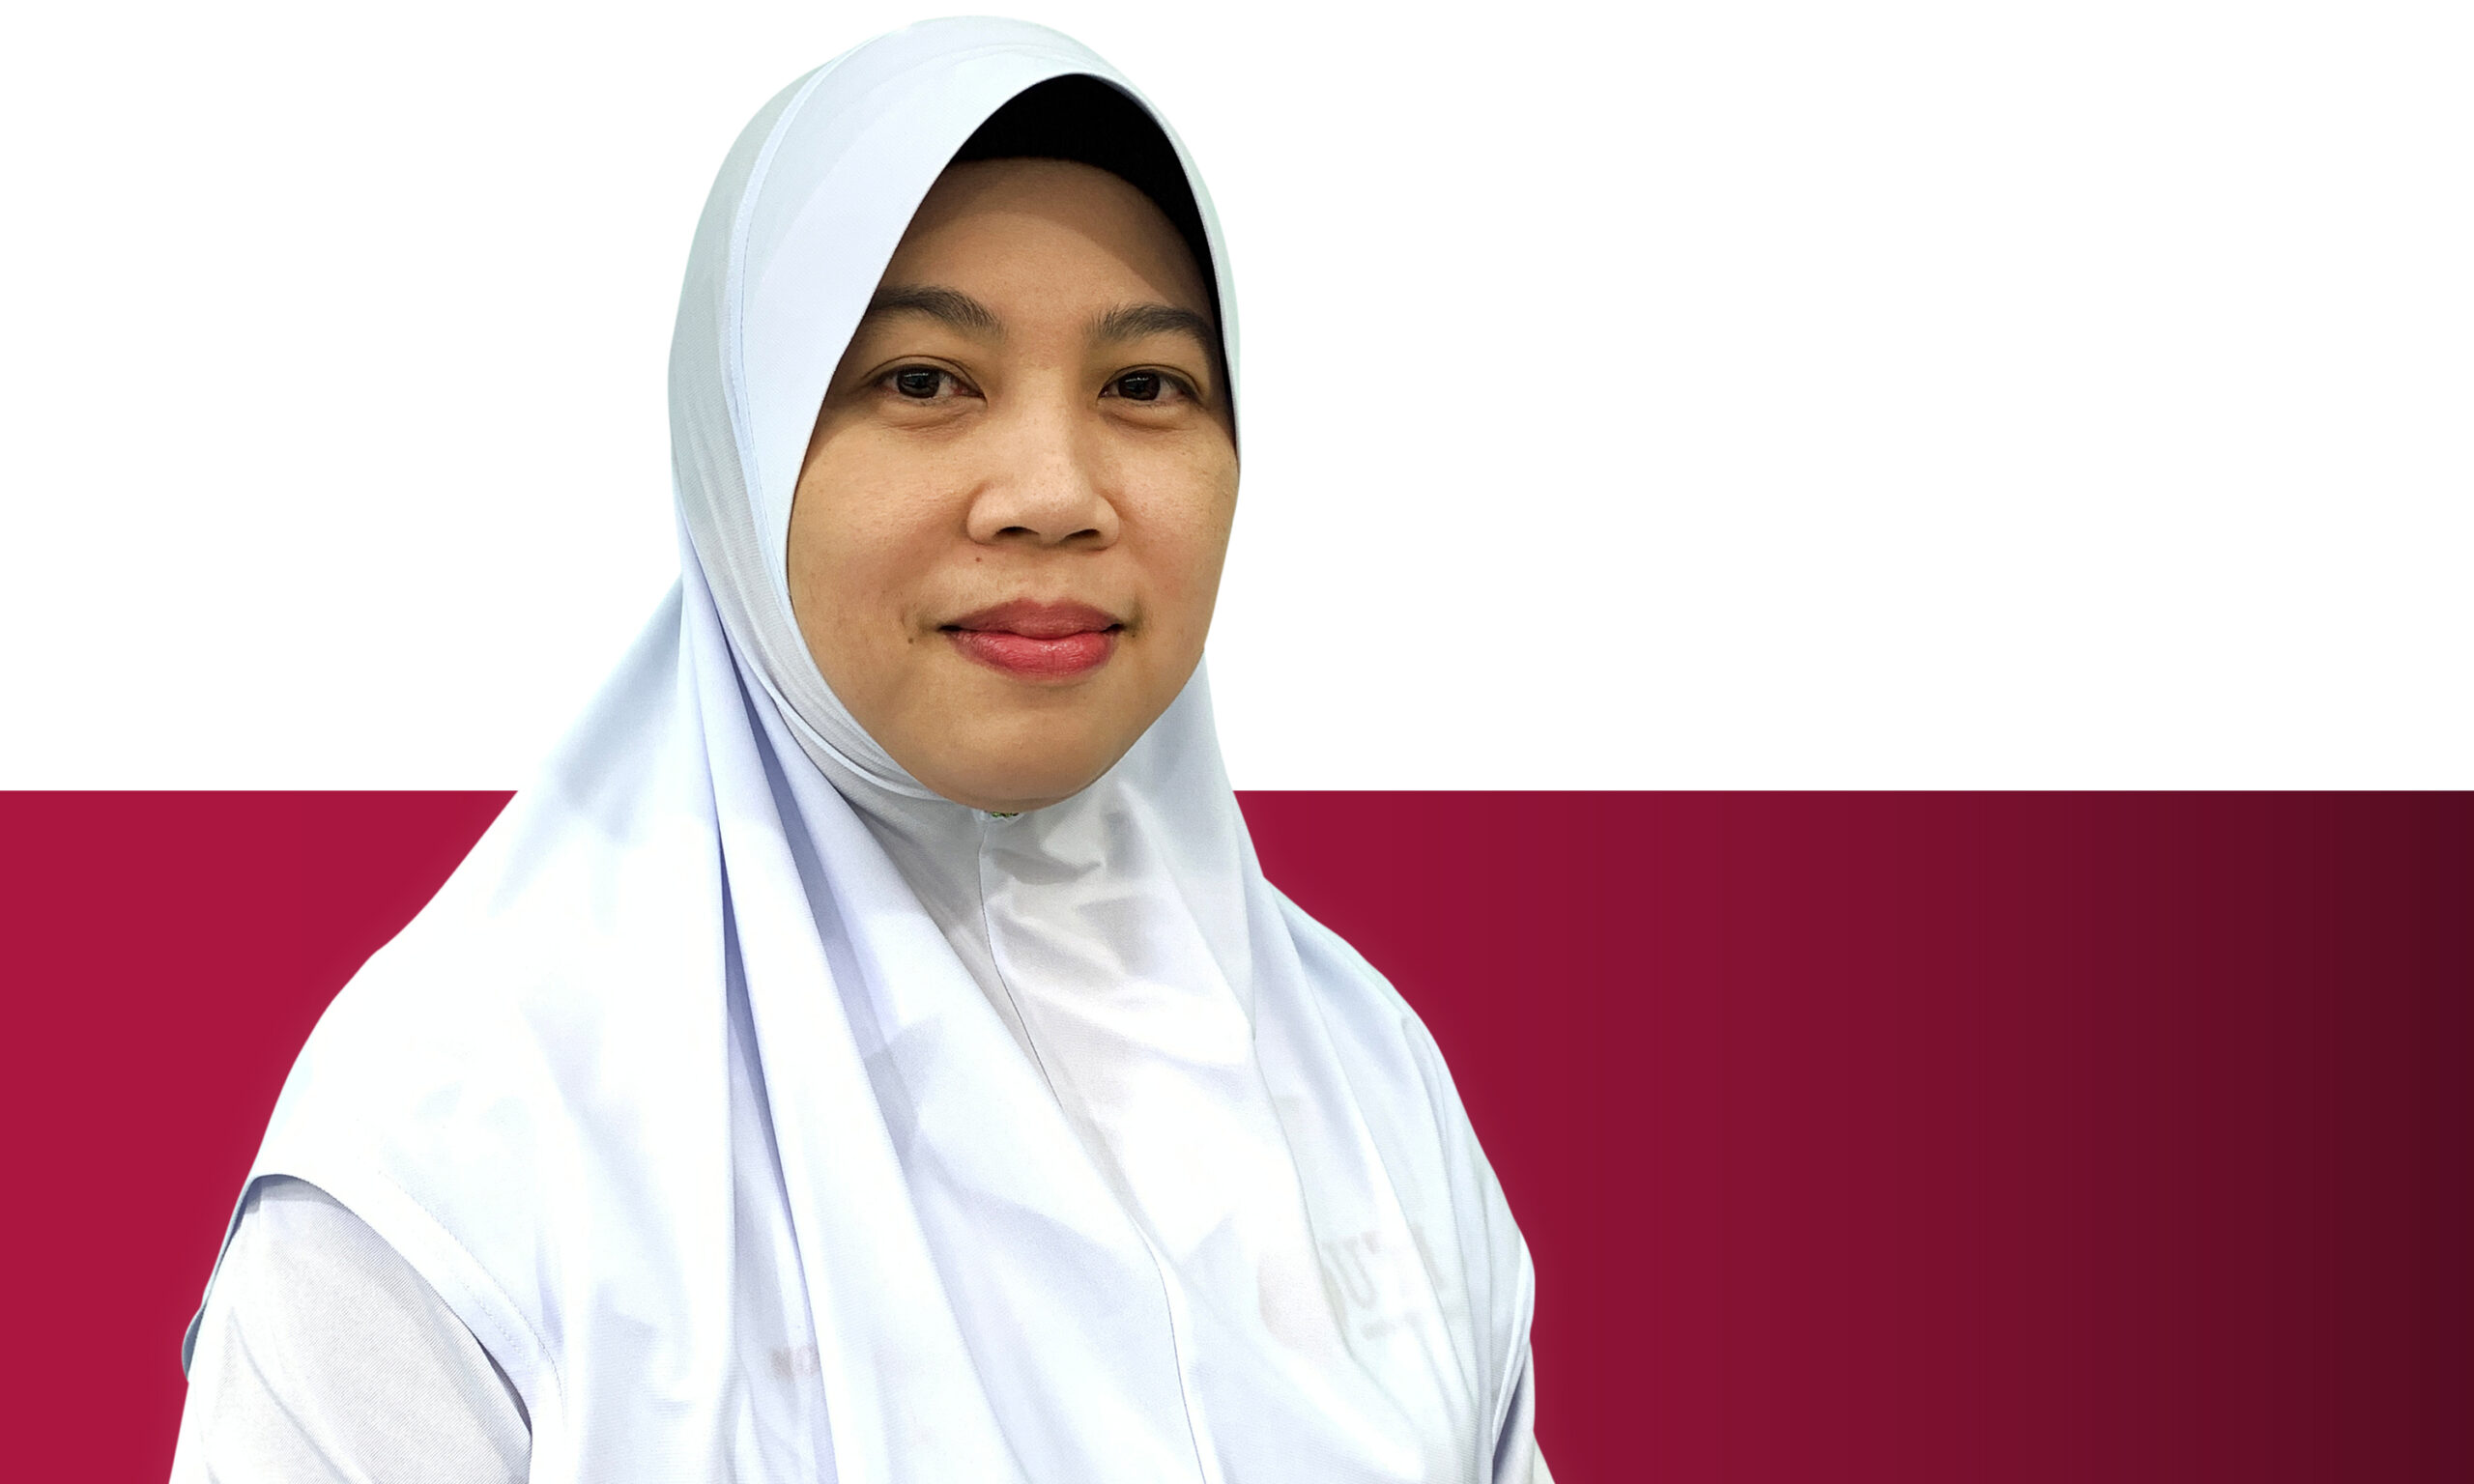 Sister Noraisah binti Mohd Yusof